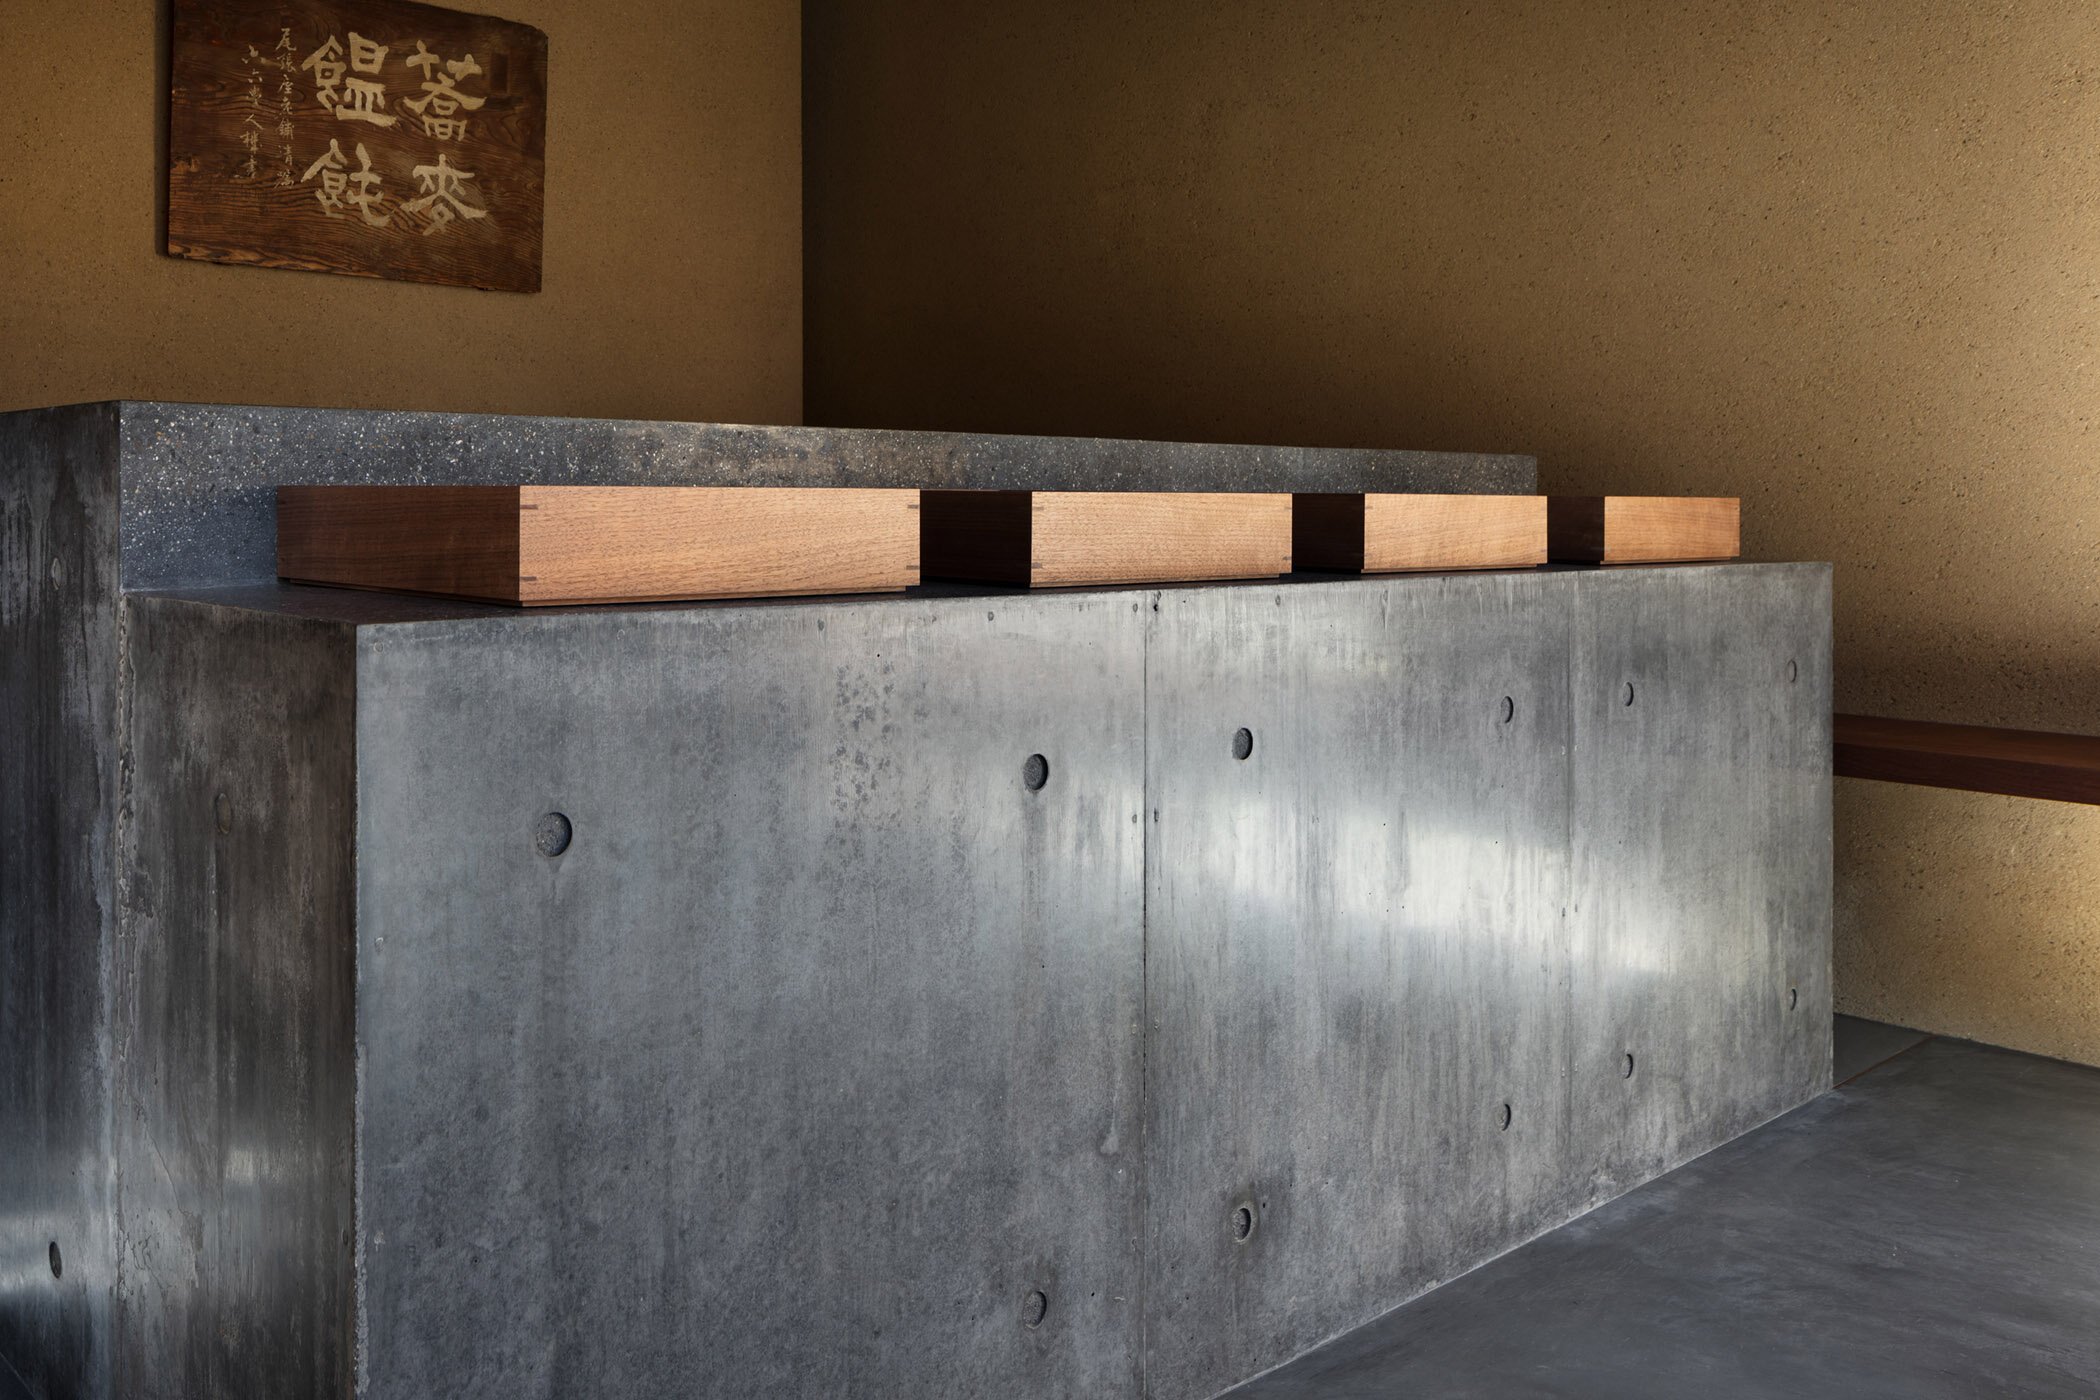  柳原照弘 Teruhiro Yanagihara Studioがインテリアデザインを手掛けた京都の尾張屋本店 菓子処。カウンターの側面は打ち放し。トップは研ぎ出し 